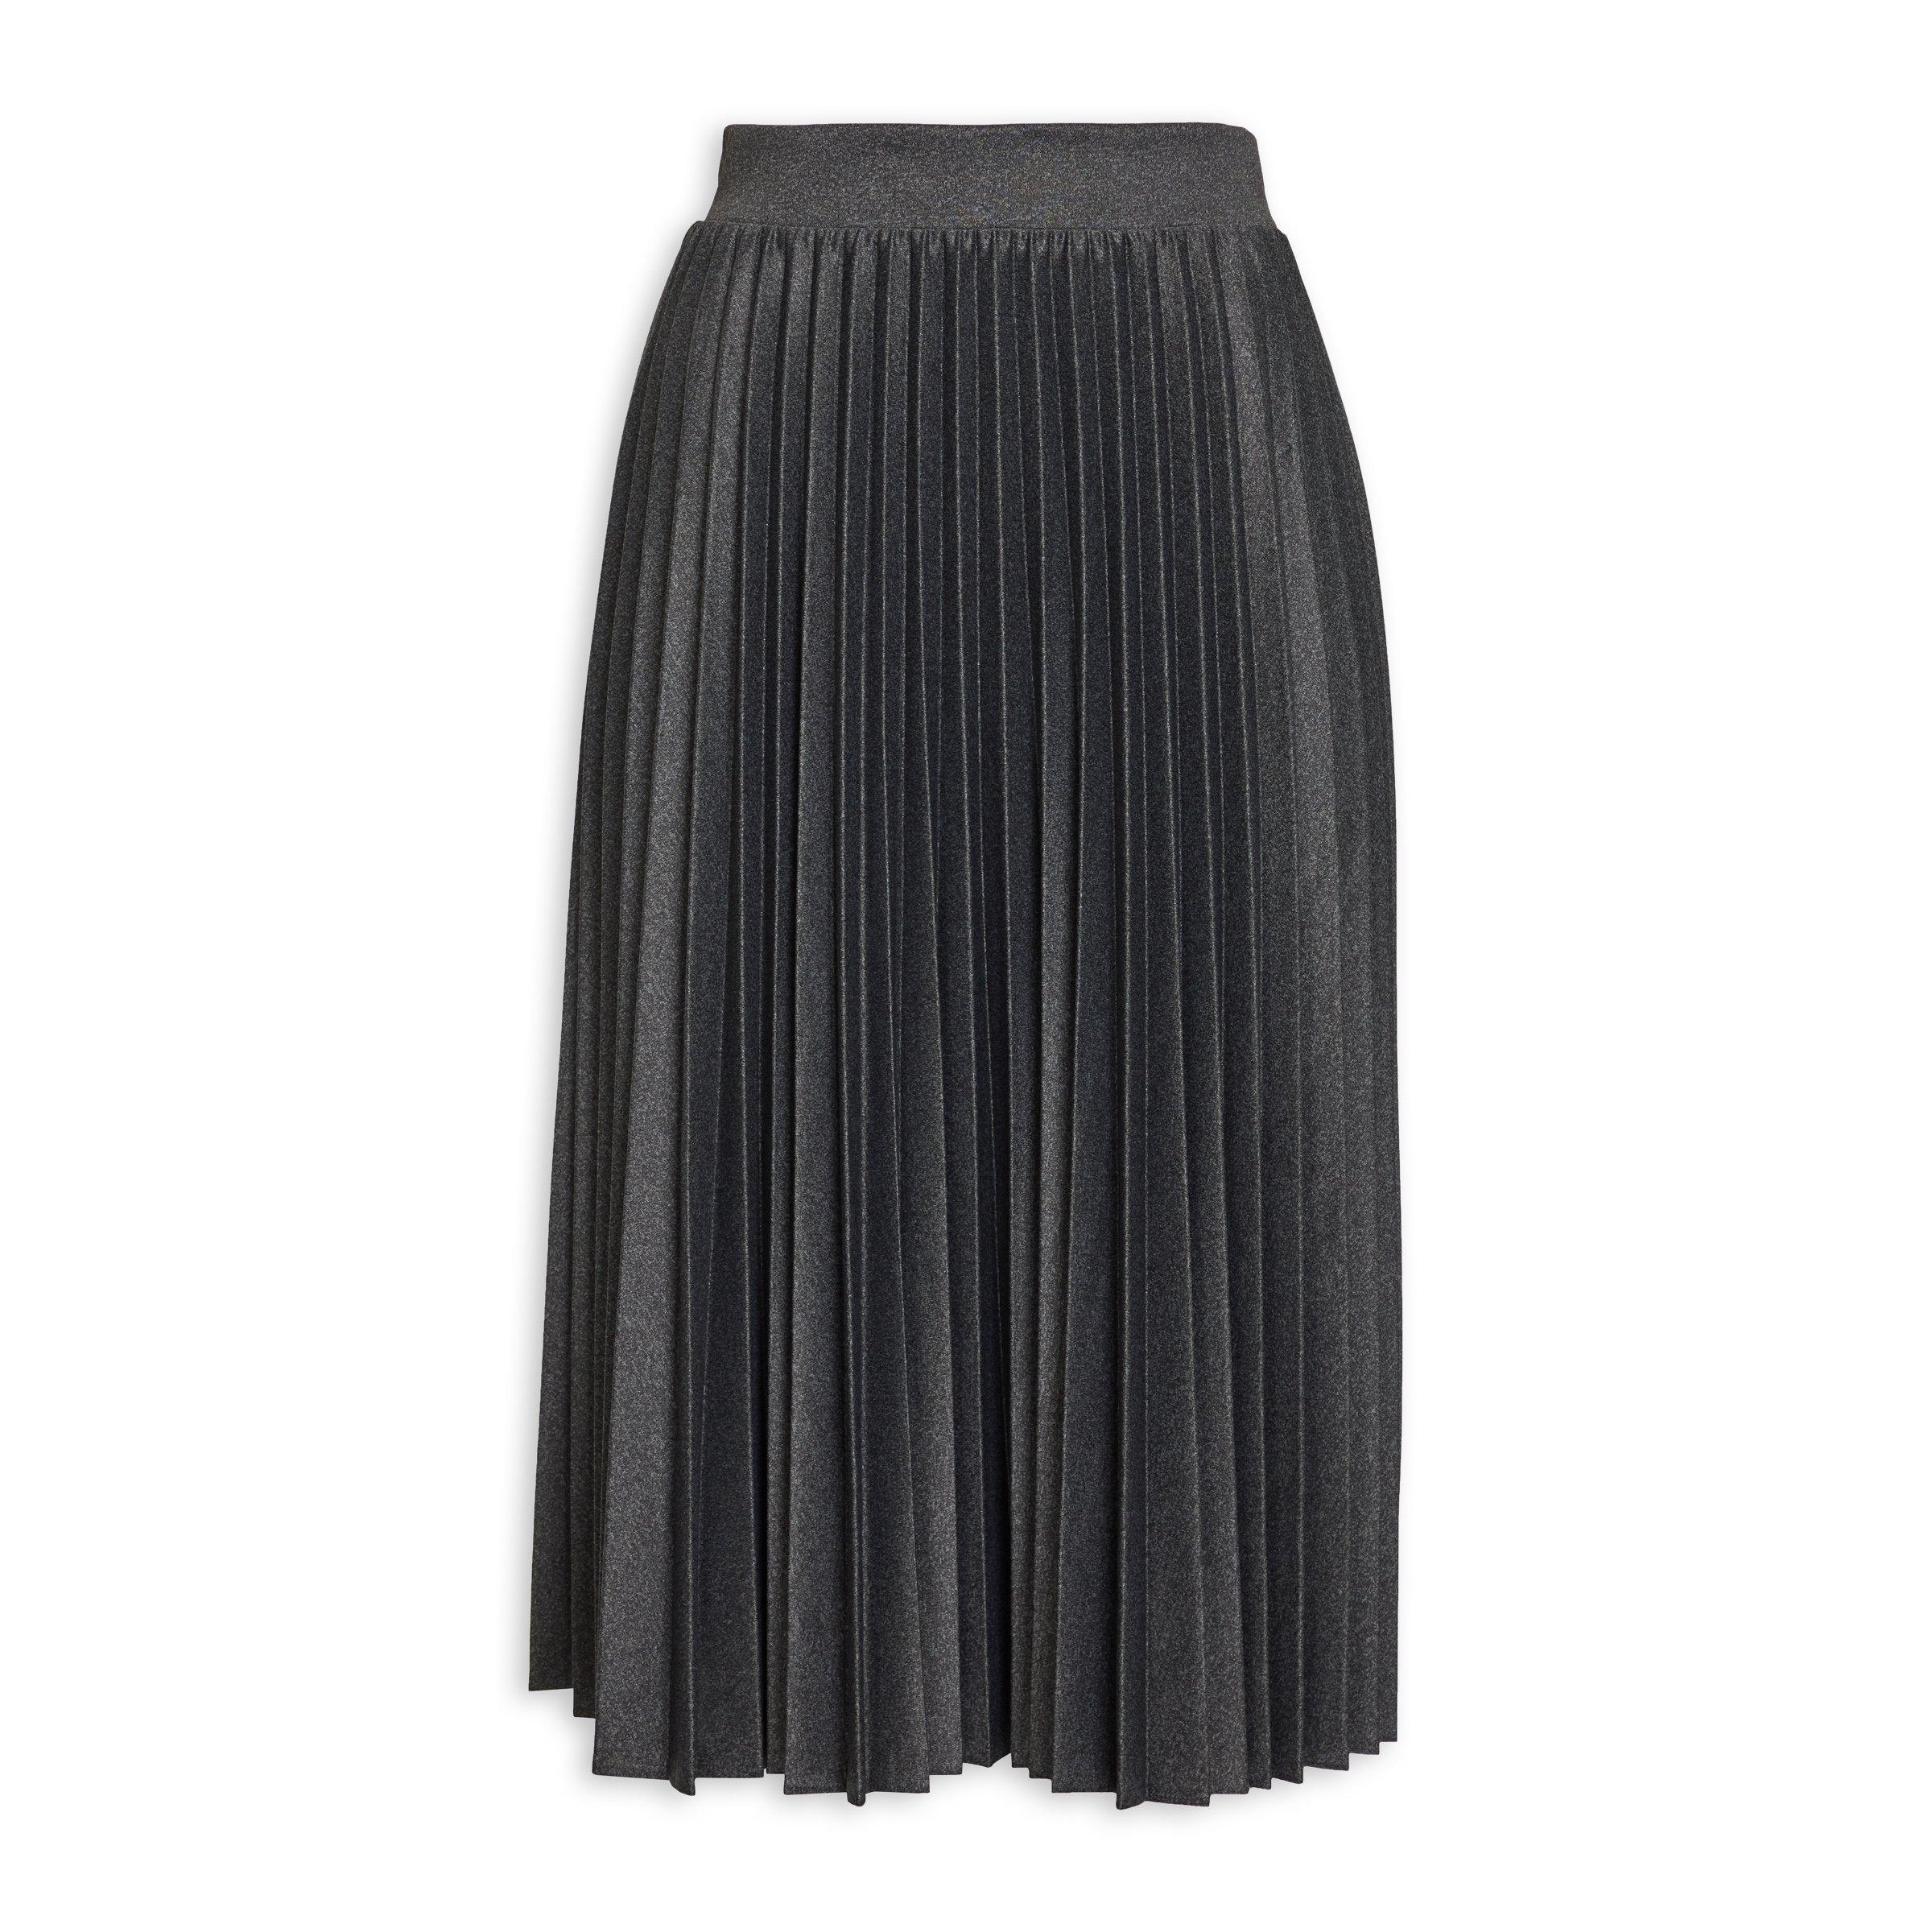 Buy Truworths Grey Pleated Skirt Online | Truworths